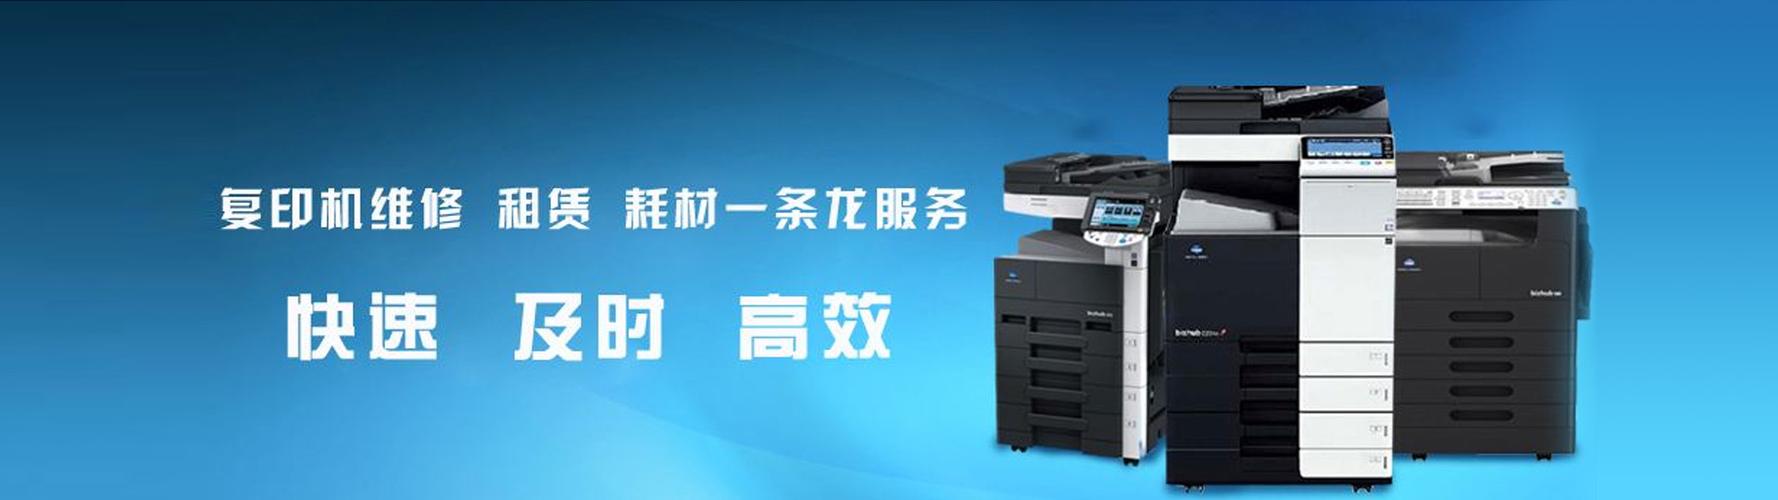 热门关键词:     激光打印机喷墨打印机复印机租赁维修服务复印机设备